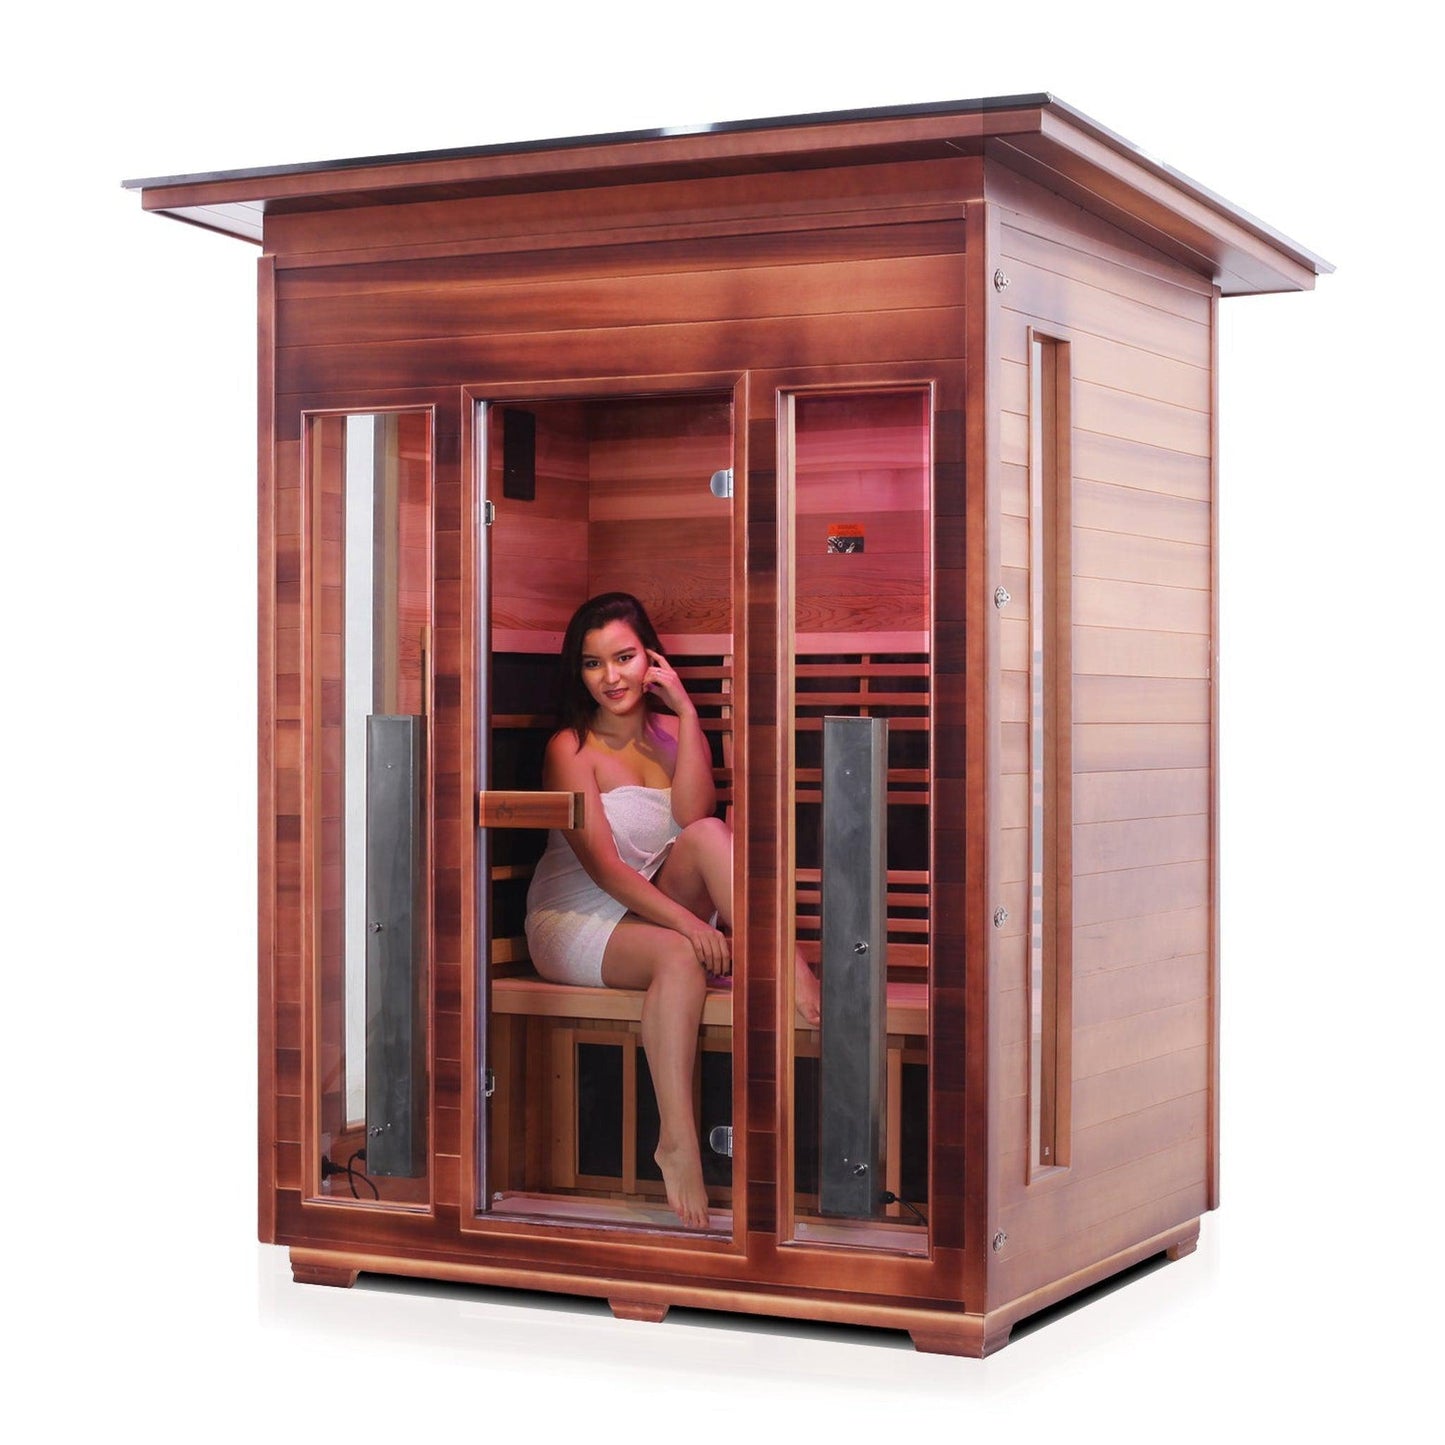 Enlighten InfraNature Original Rustic 3-Person Slope Roof Full Spectrum Infrared Outdoor Sauna